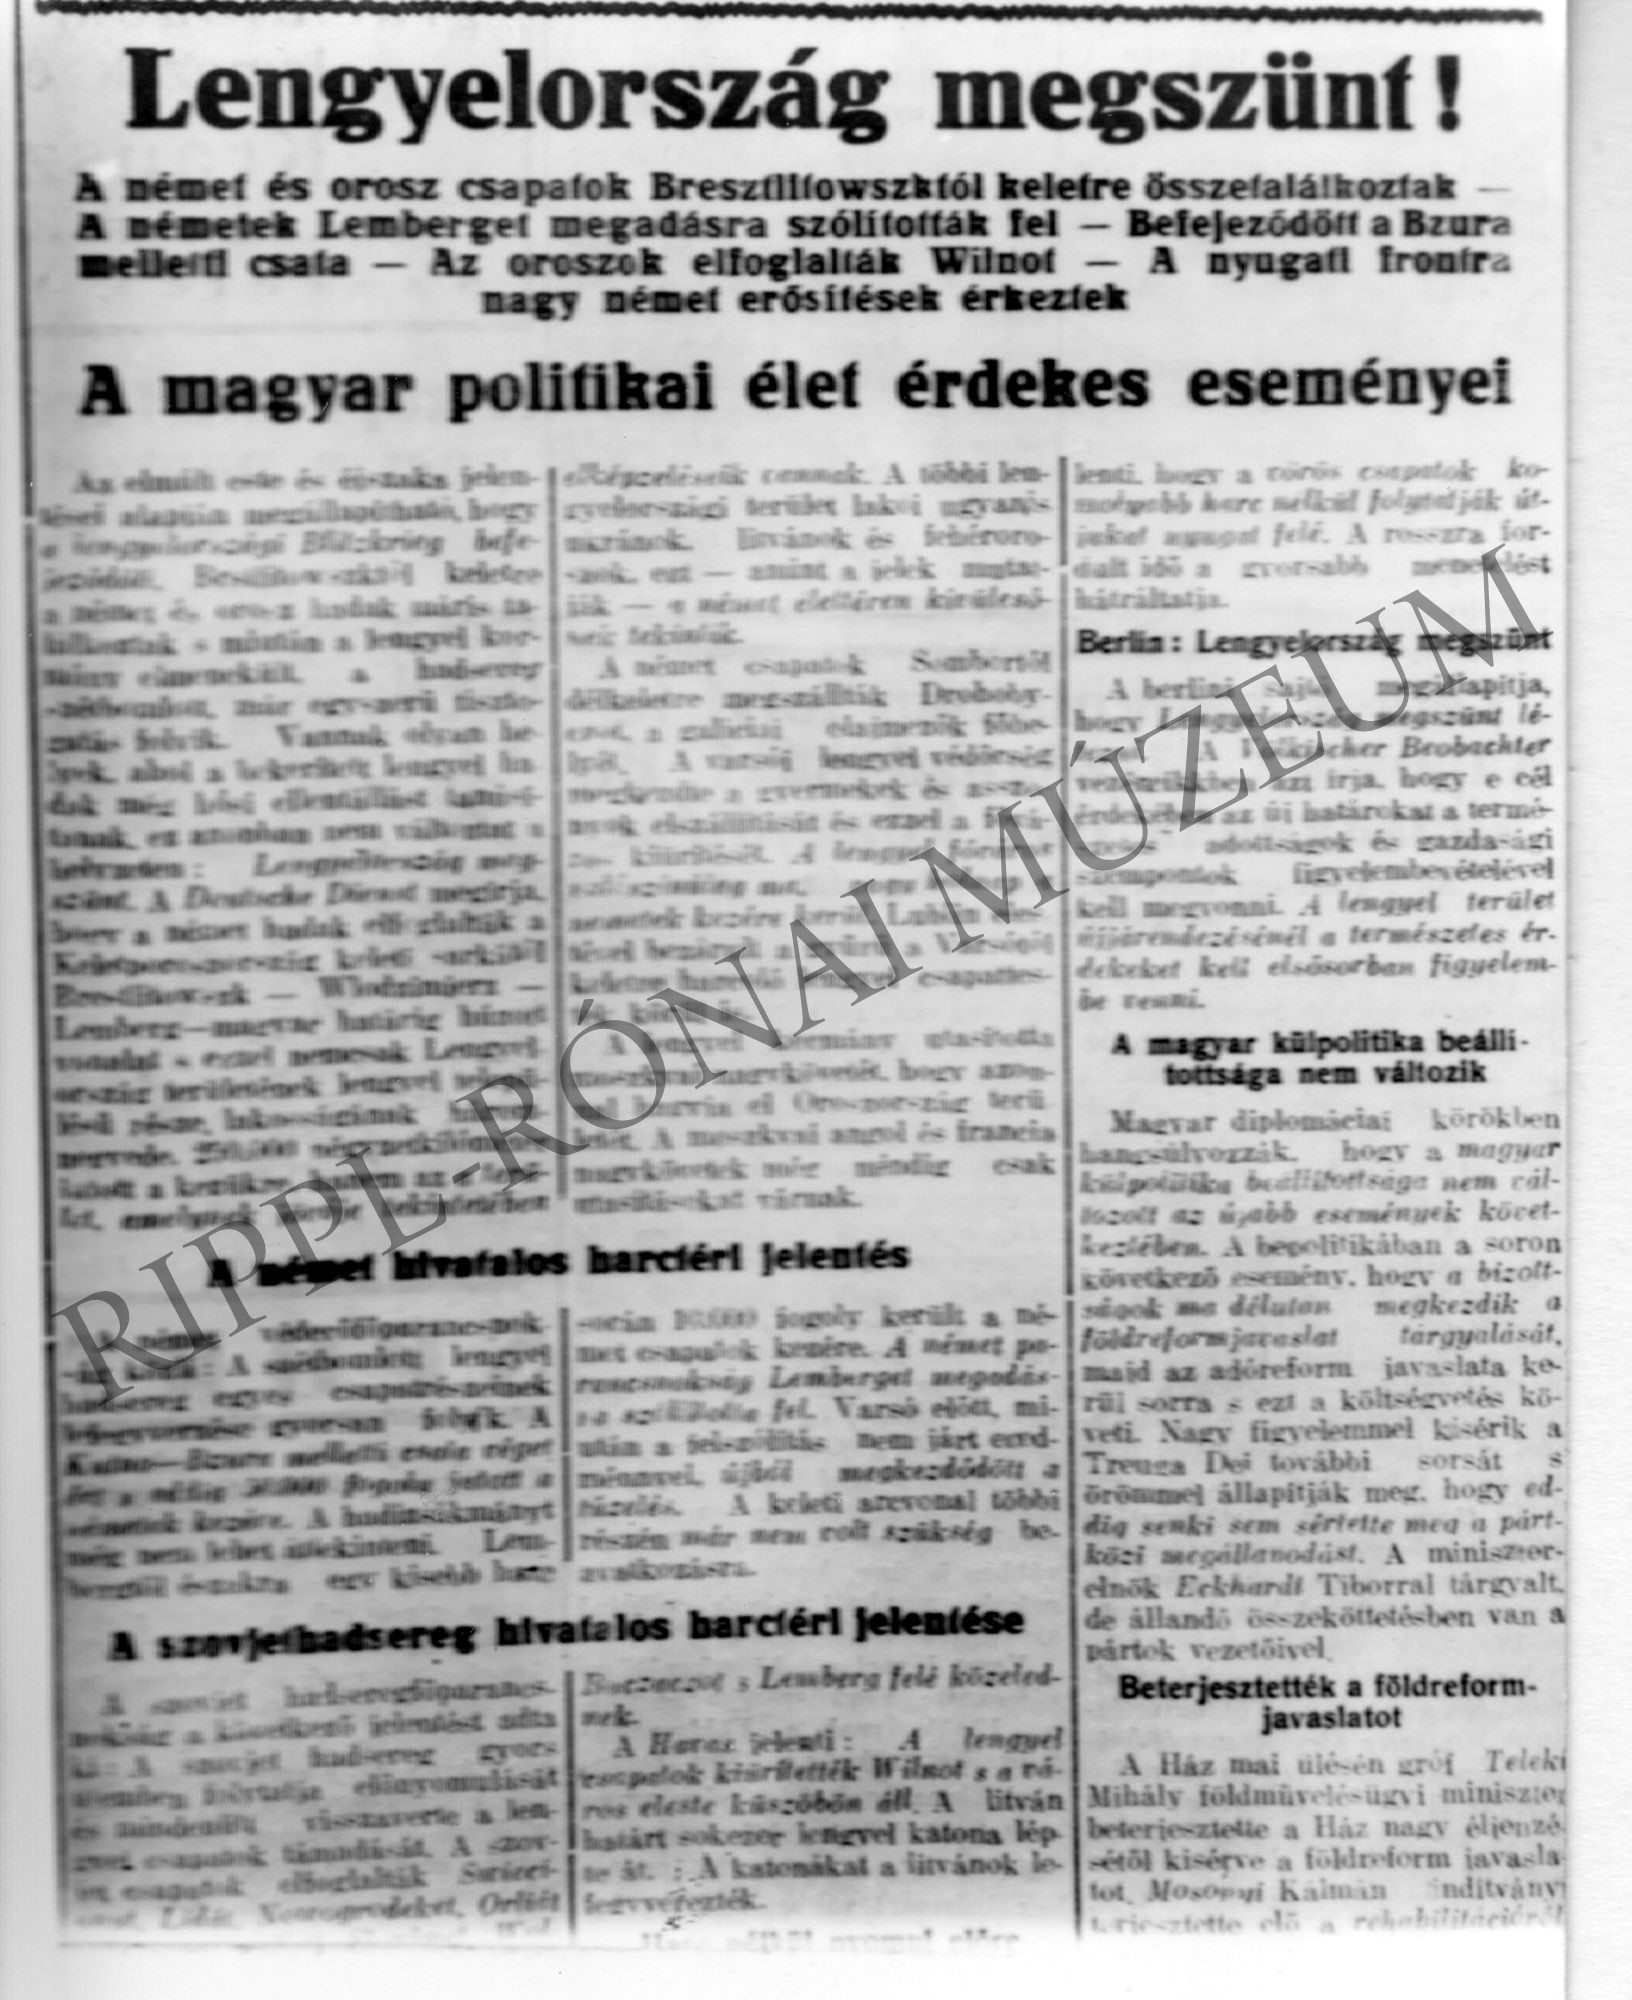 Újságcikk - Somogyi Ujság 1939. szeptember 6.
"Lengyelország megszűnt!" (Rippl-Rónai Múzeum CC BY-NC-SA)